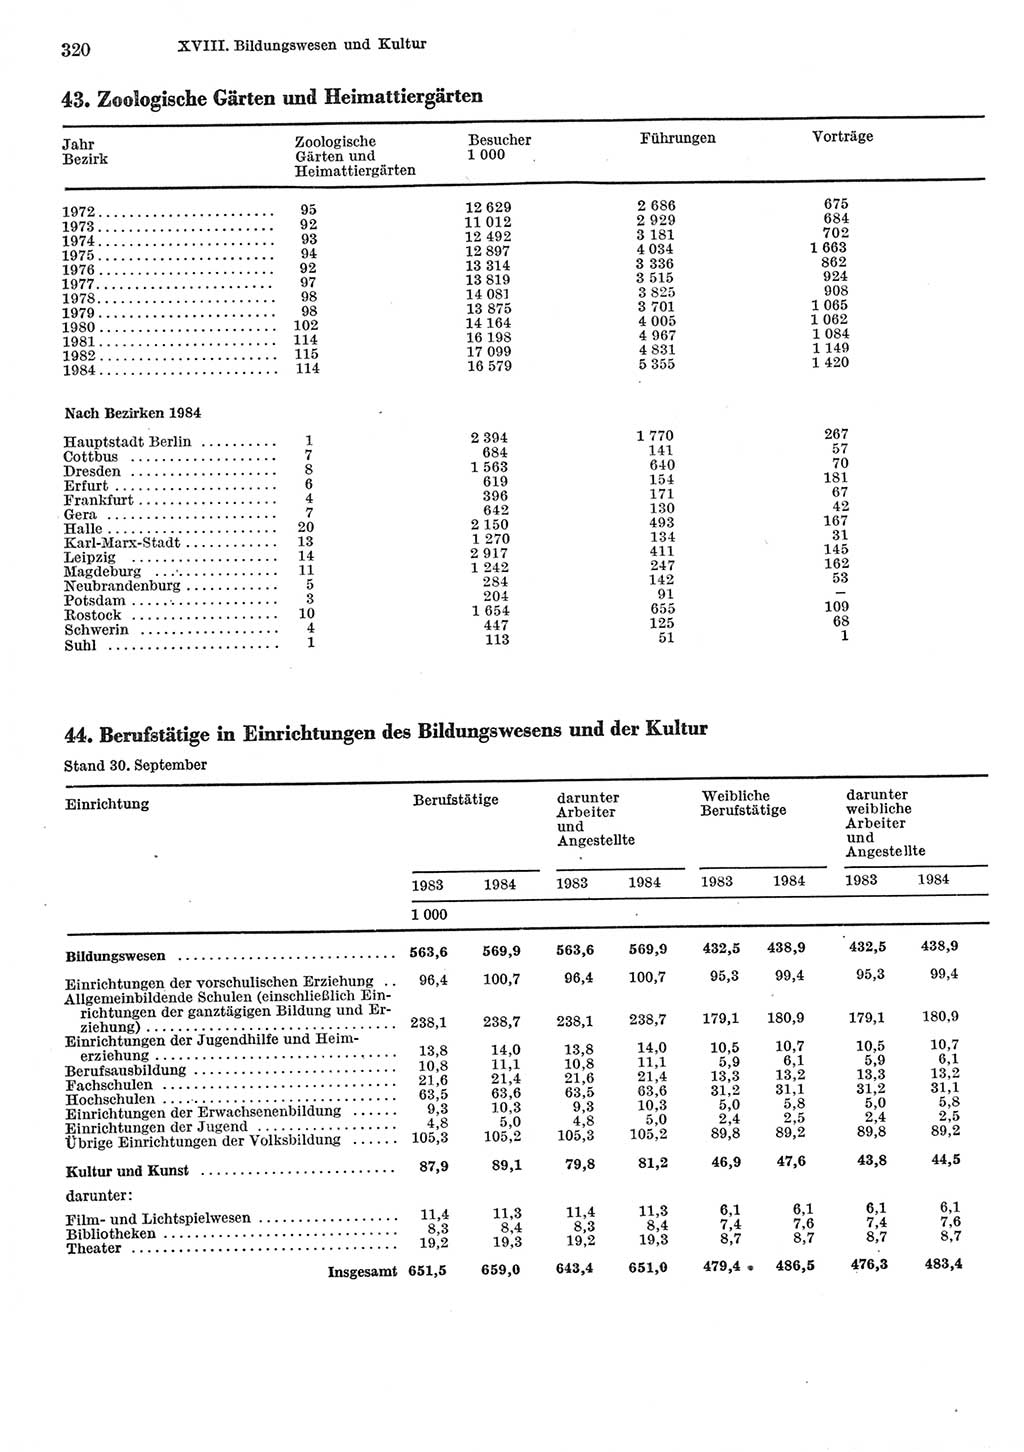 Statistisches Jahrbuch der Deutschen Demokratischen Republik (DDR) 1985, Seite 320 (Stat. Jb. DDR 1985, S. 320)